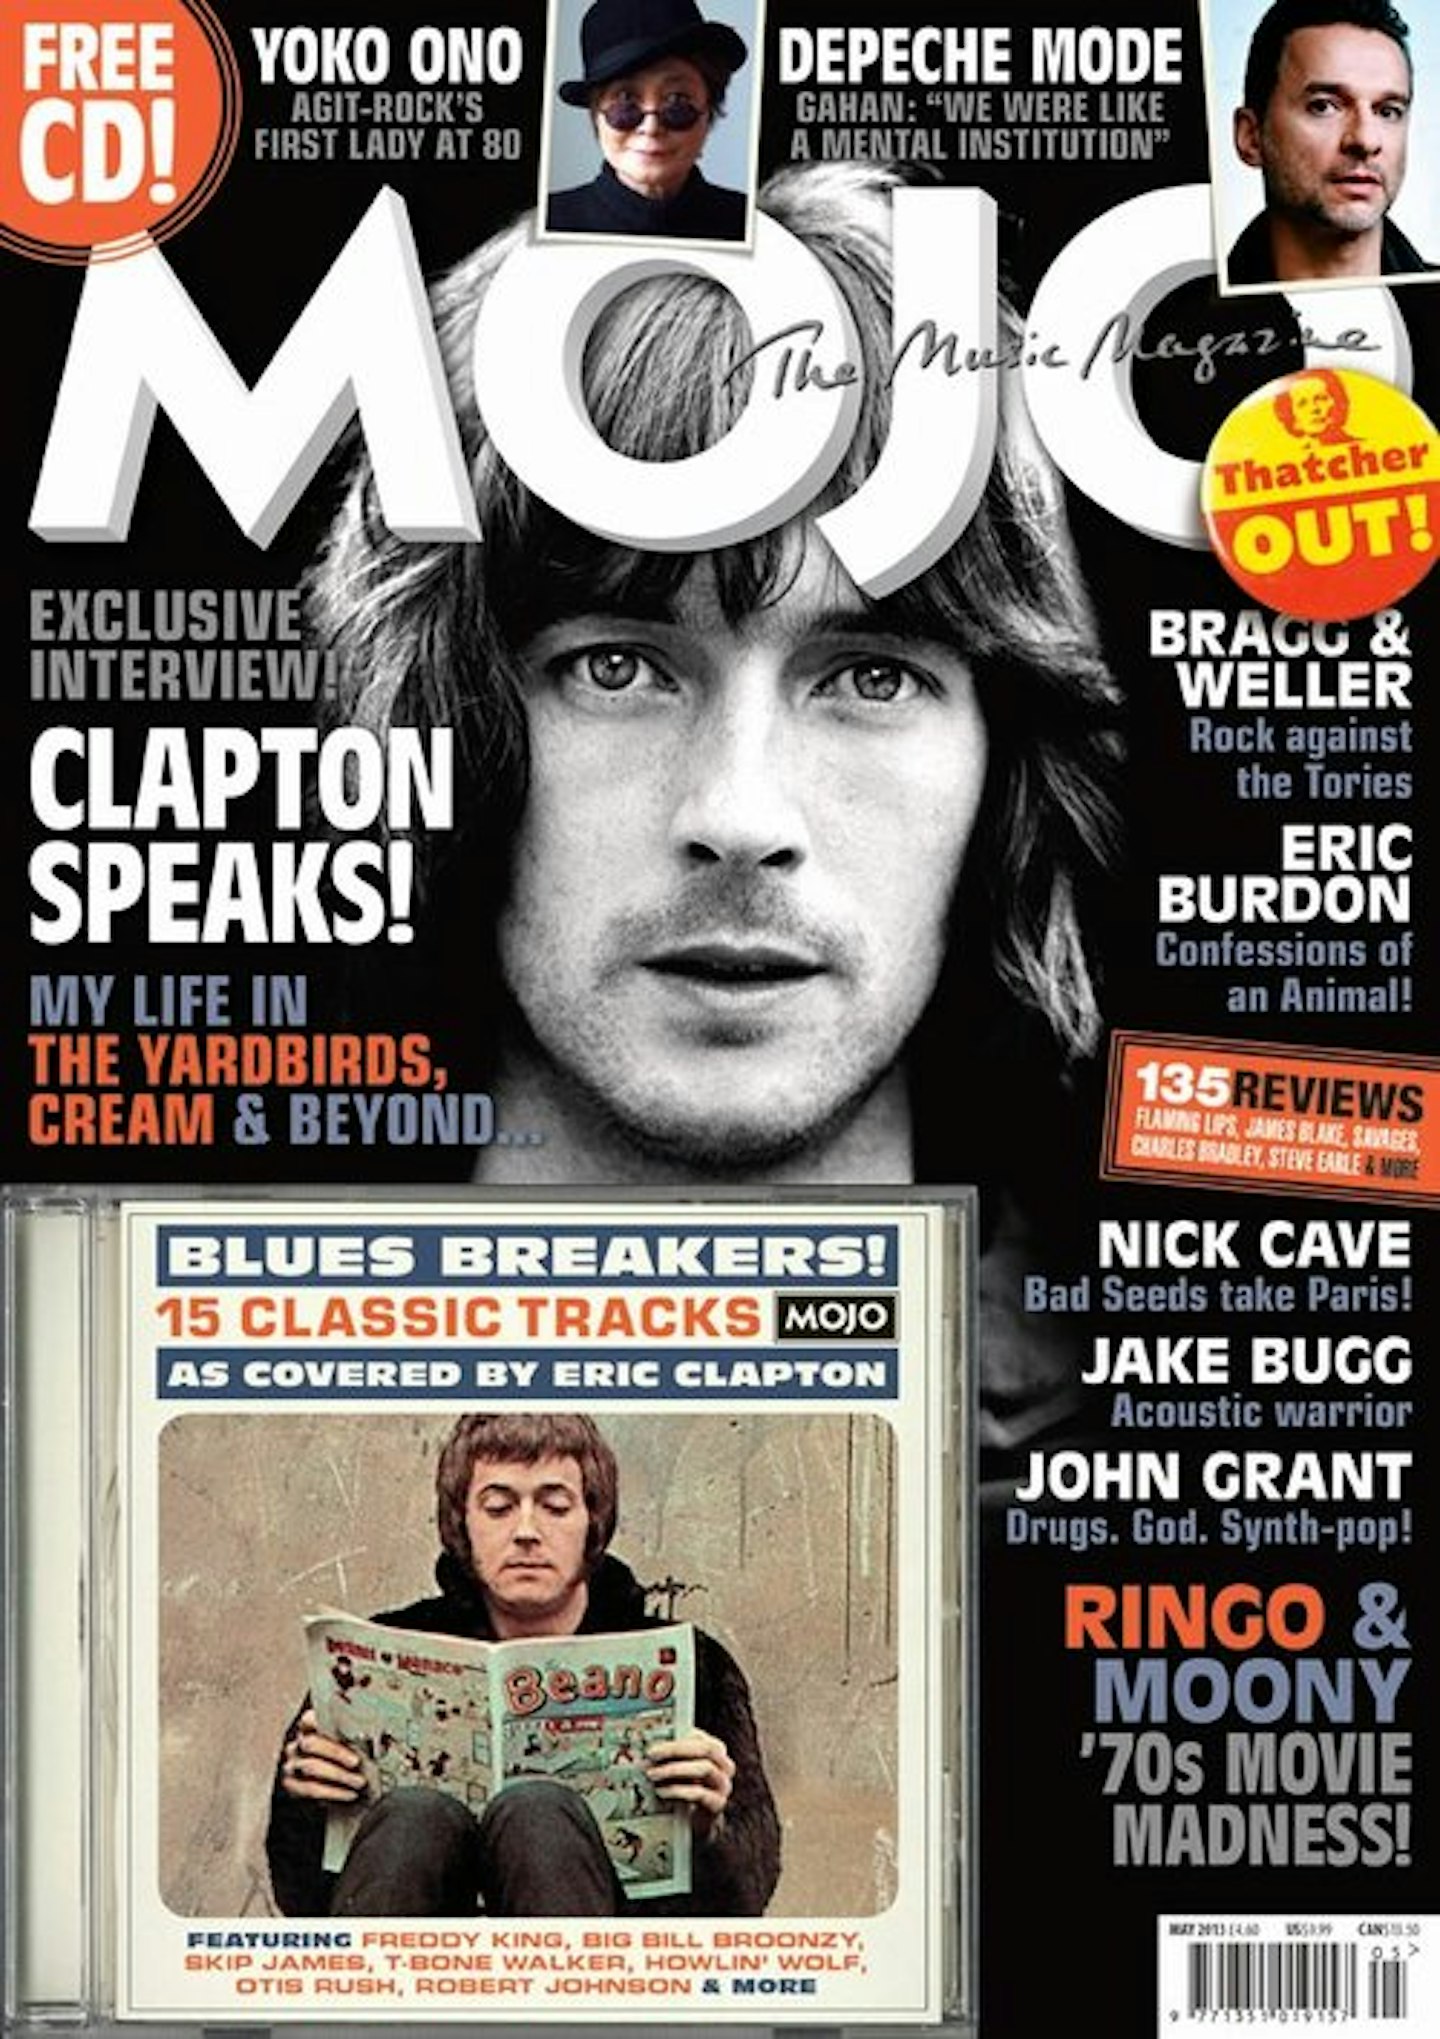 MOJO Issue 234 / May 2013